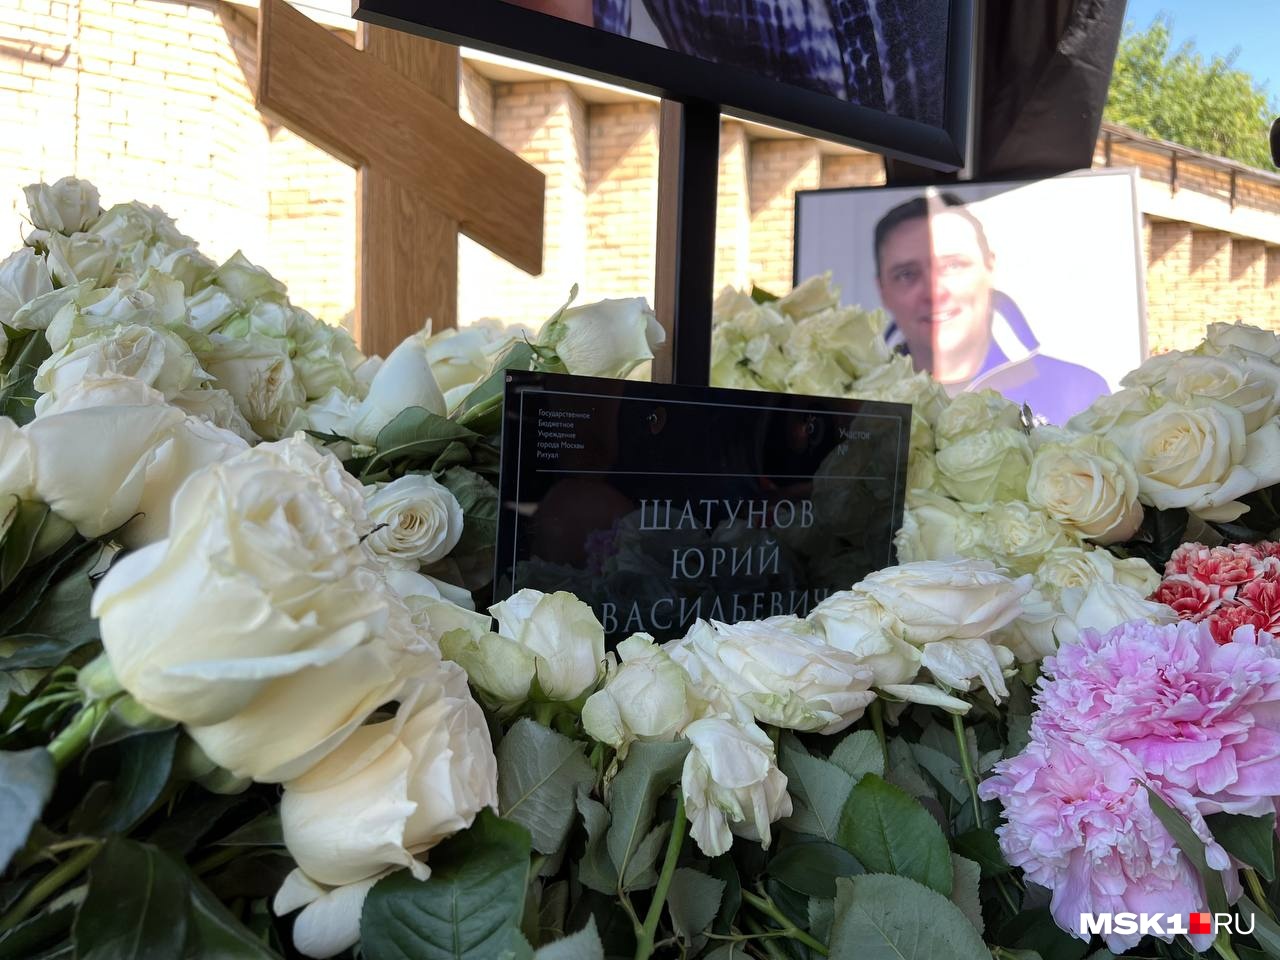 Шатунова похоронят в москве. Могила Юры Шатунова на Троекуровском кладбище. Похороны Юрия Шатунова на Троекуровском кладбище. Шатунов похоронен на Троекуровском кладбище.